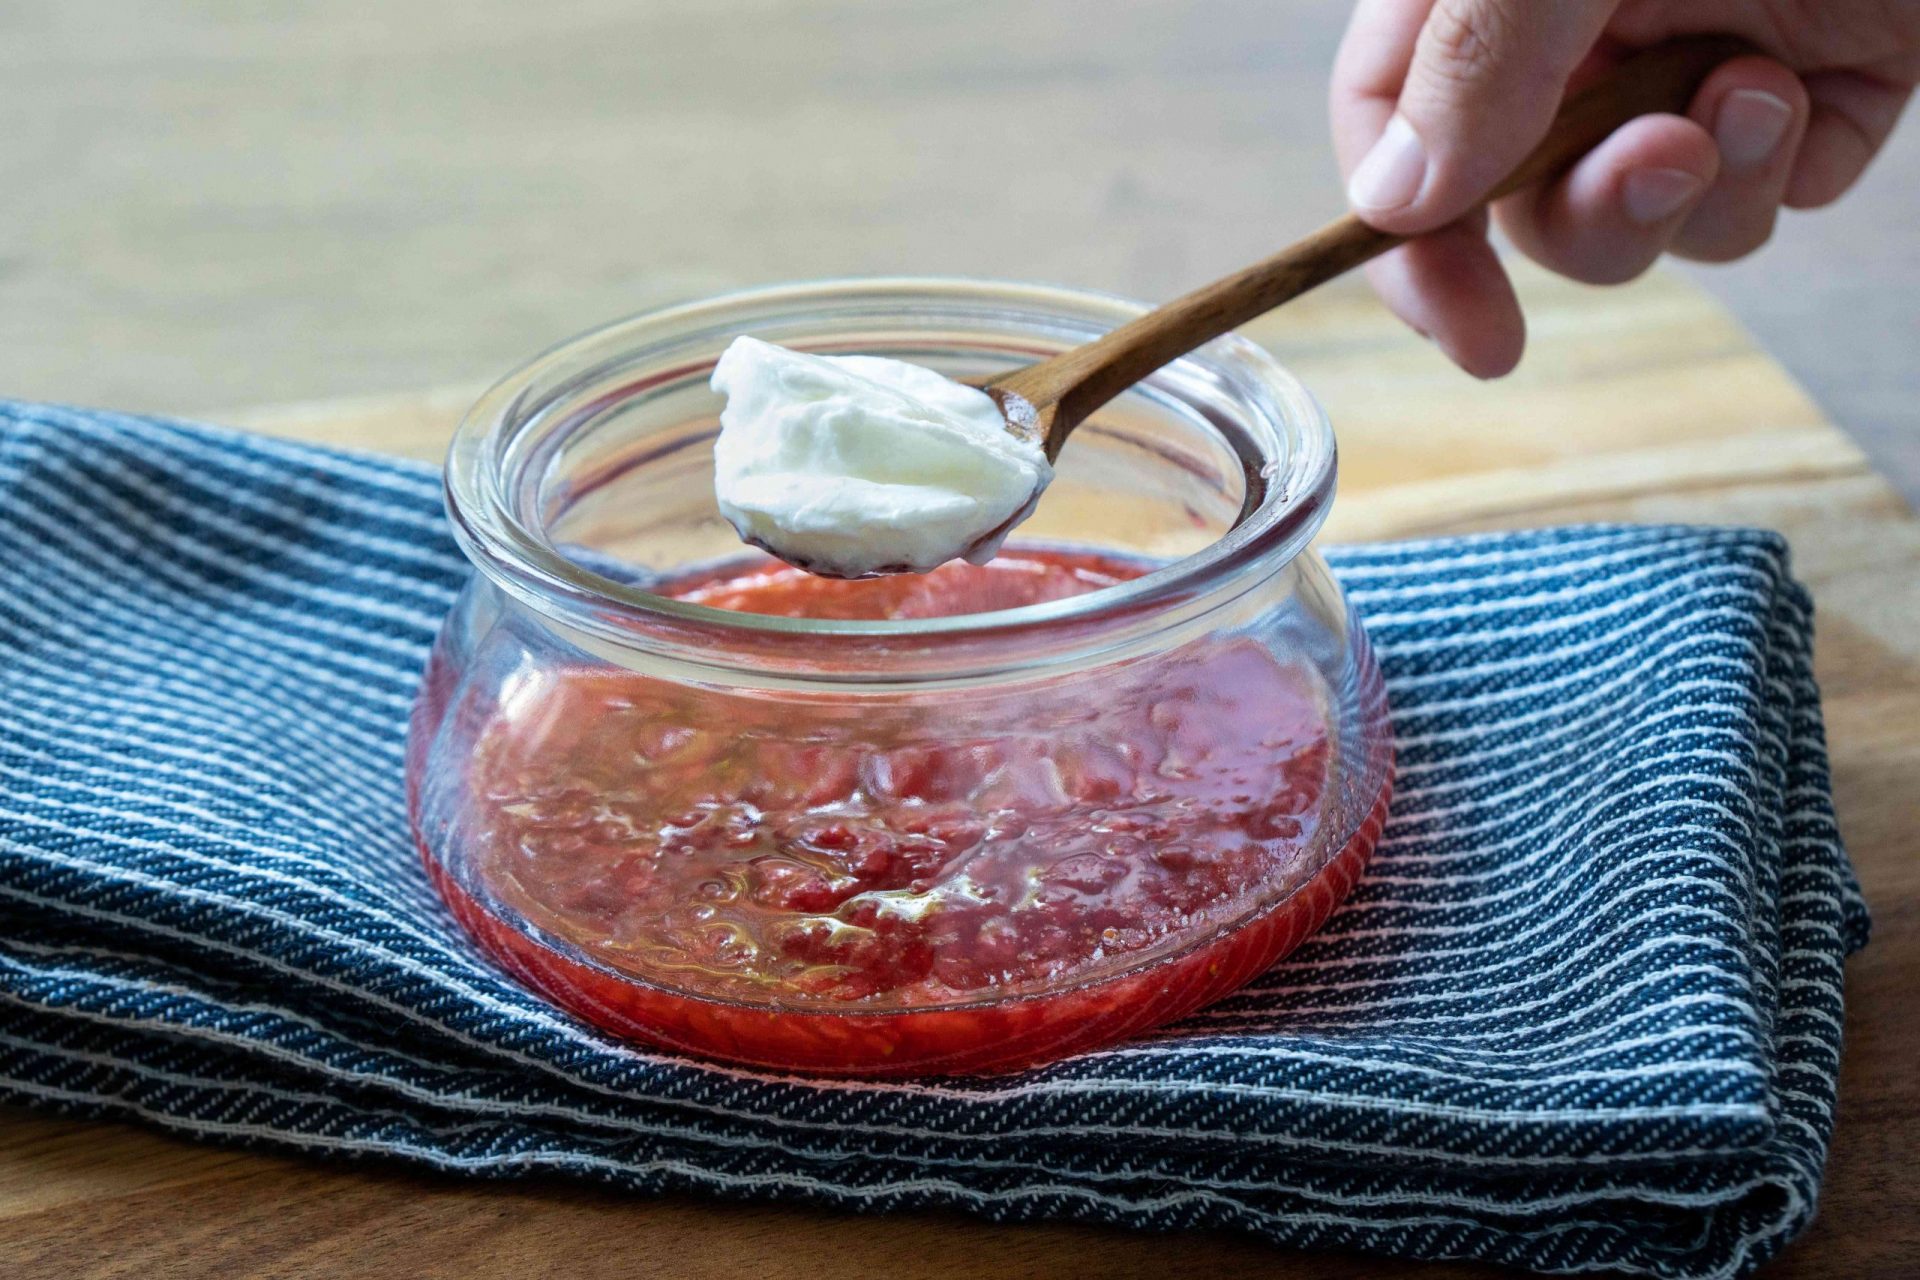 la mano añade una cucharada de yogur griego en una cuchara de madera a la mezcla de fresas trituradas en un bol de cristal